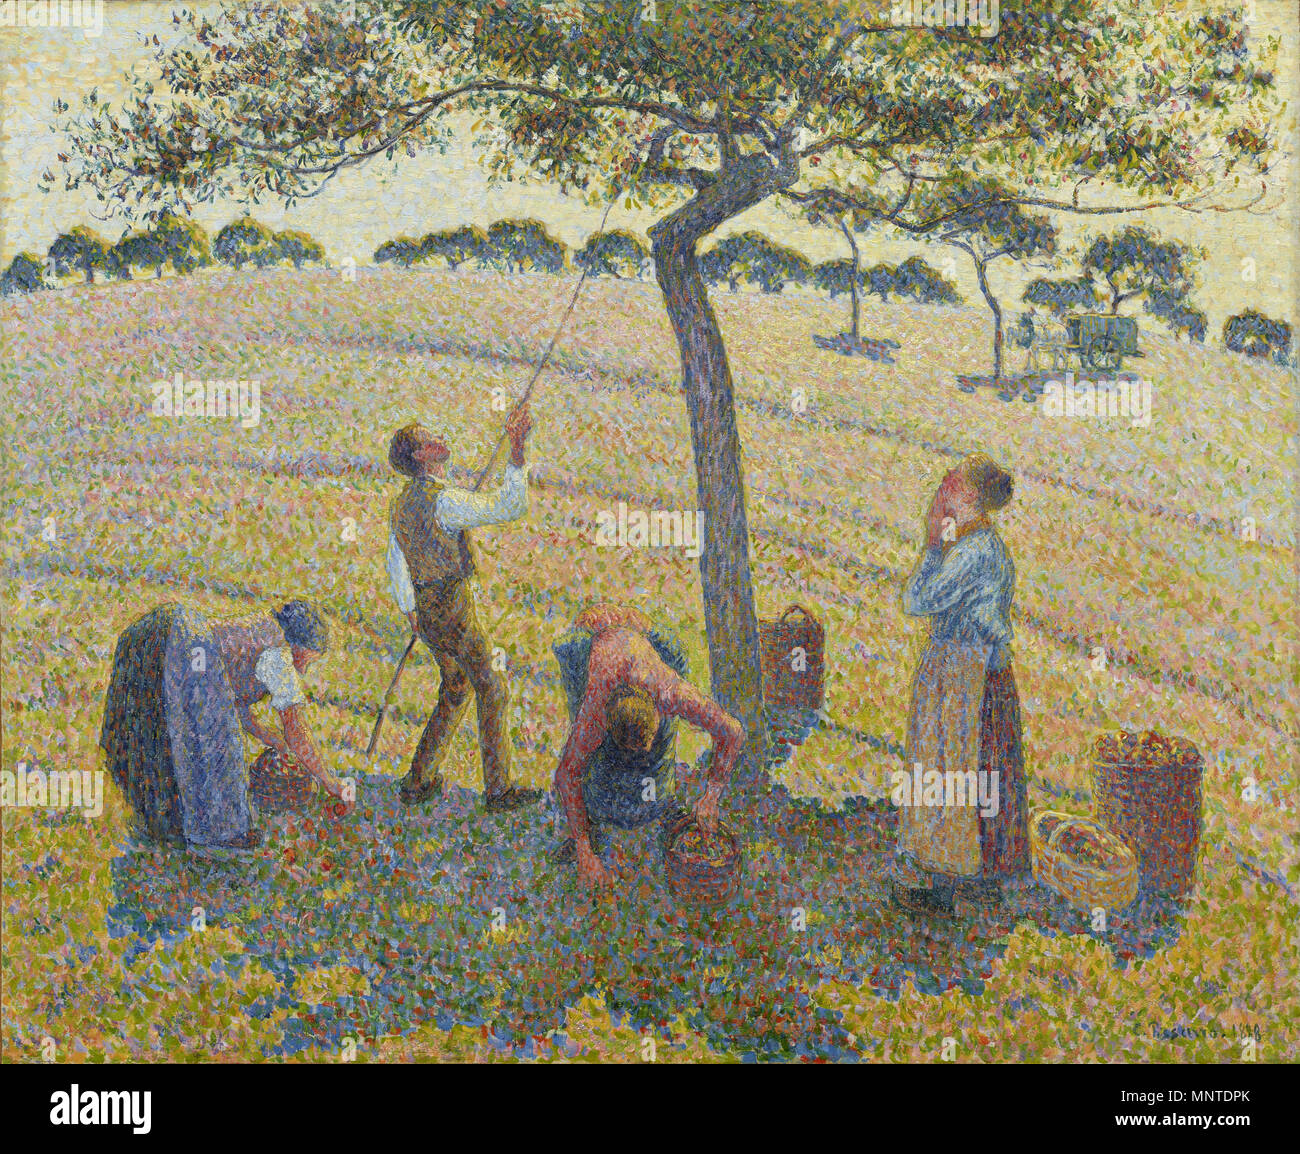 English: Apfelernte in Eragny Englisch: Apple Harvest bei Eragny Français: La Récolte des Pommes à Cergy 1888. 1007 Apfelernte von Camille Pissarro Stockfoto